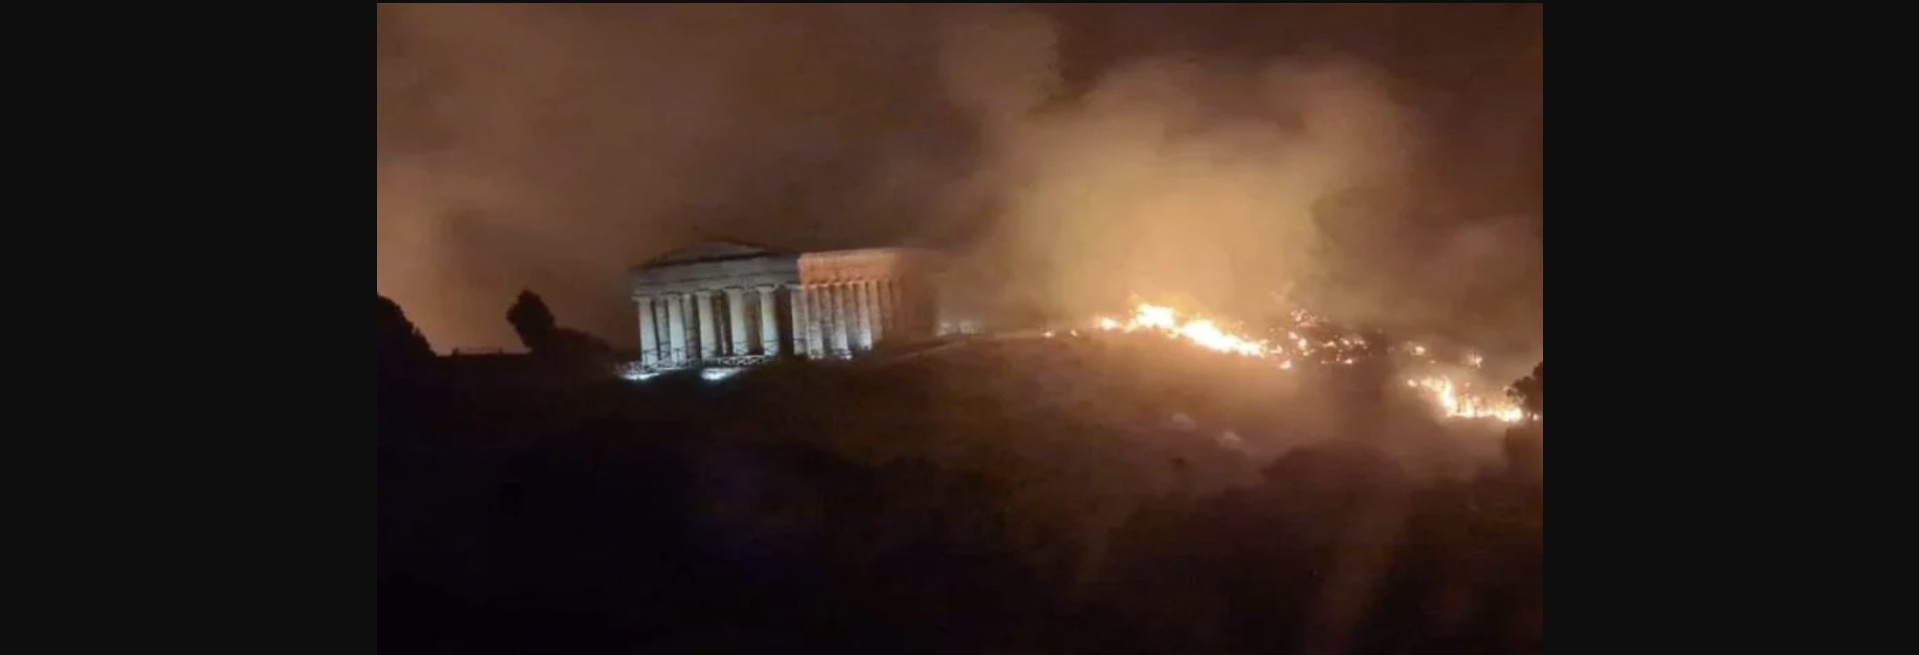 Σικελία: Δωρικός ναός κυκλώθηκε από τις φλόγες (φωτο)